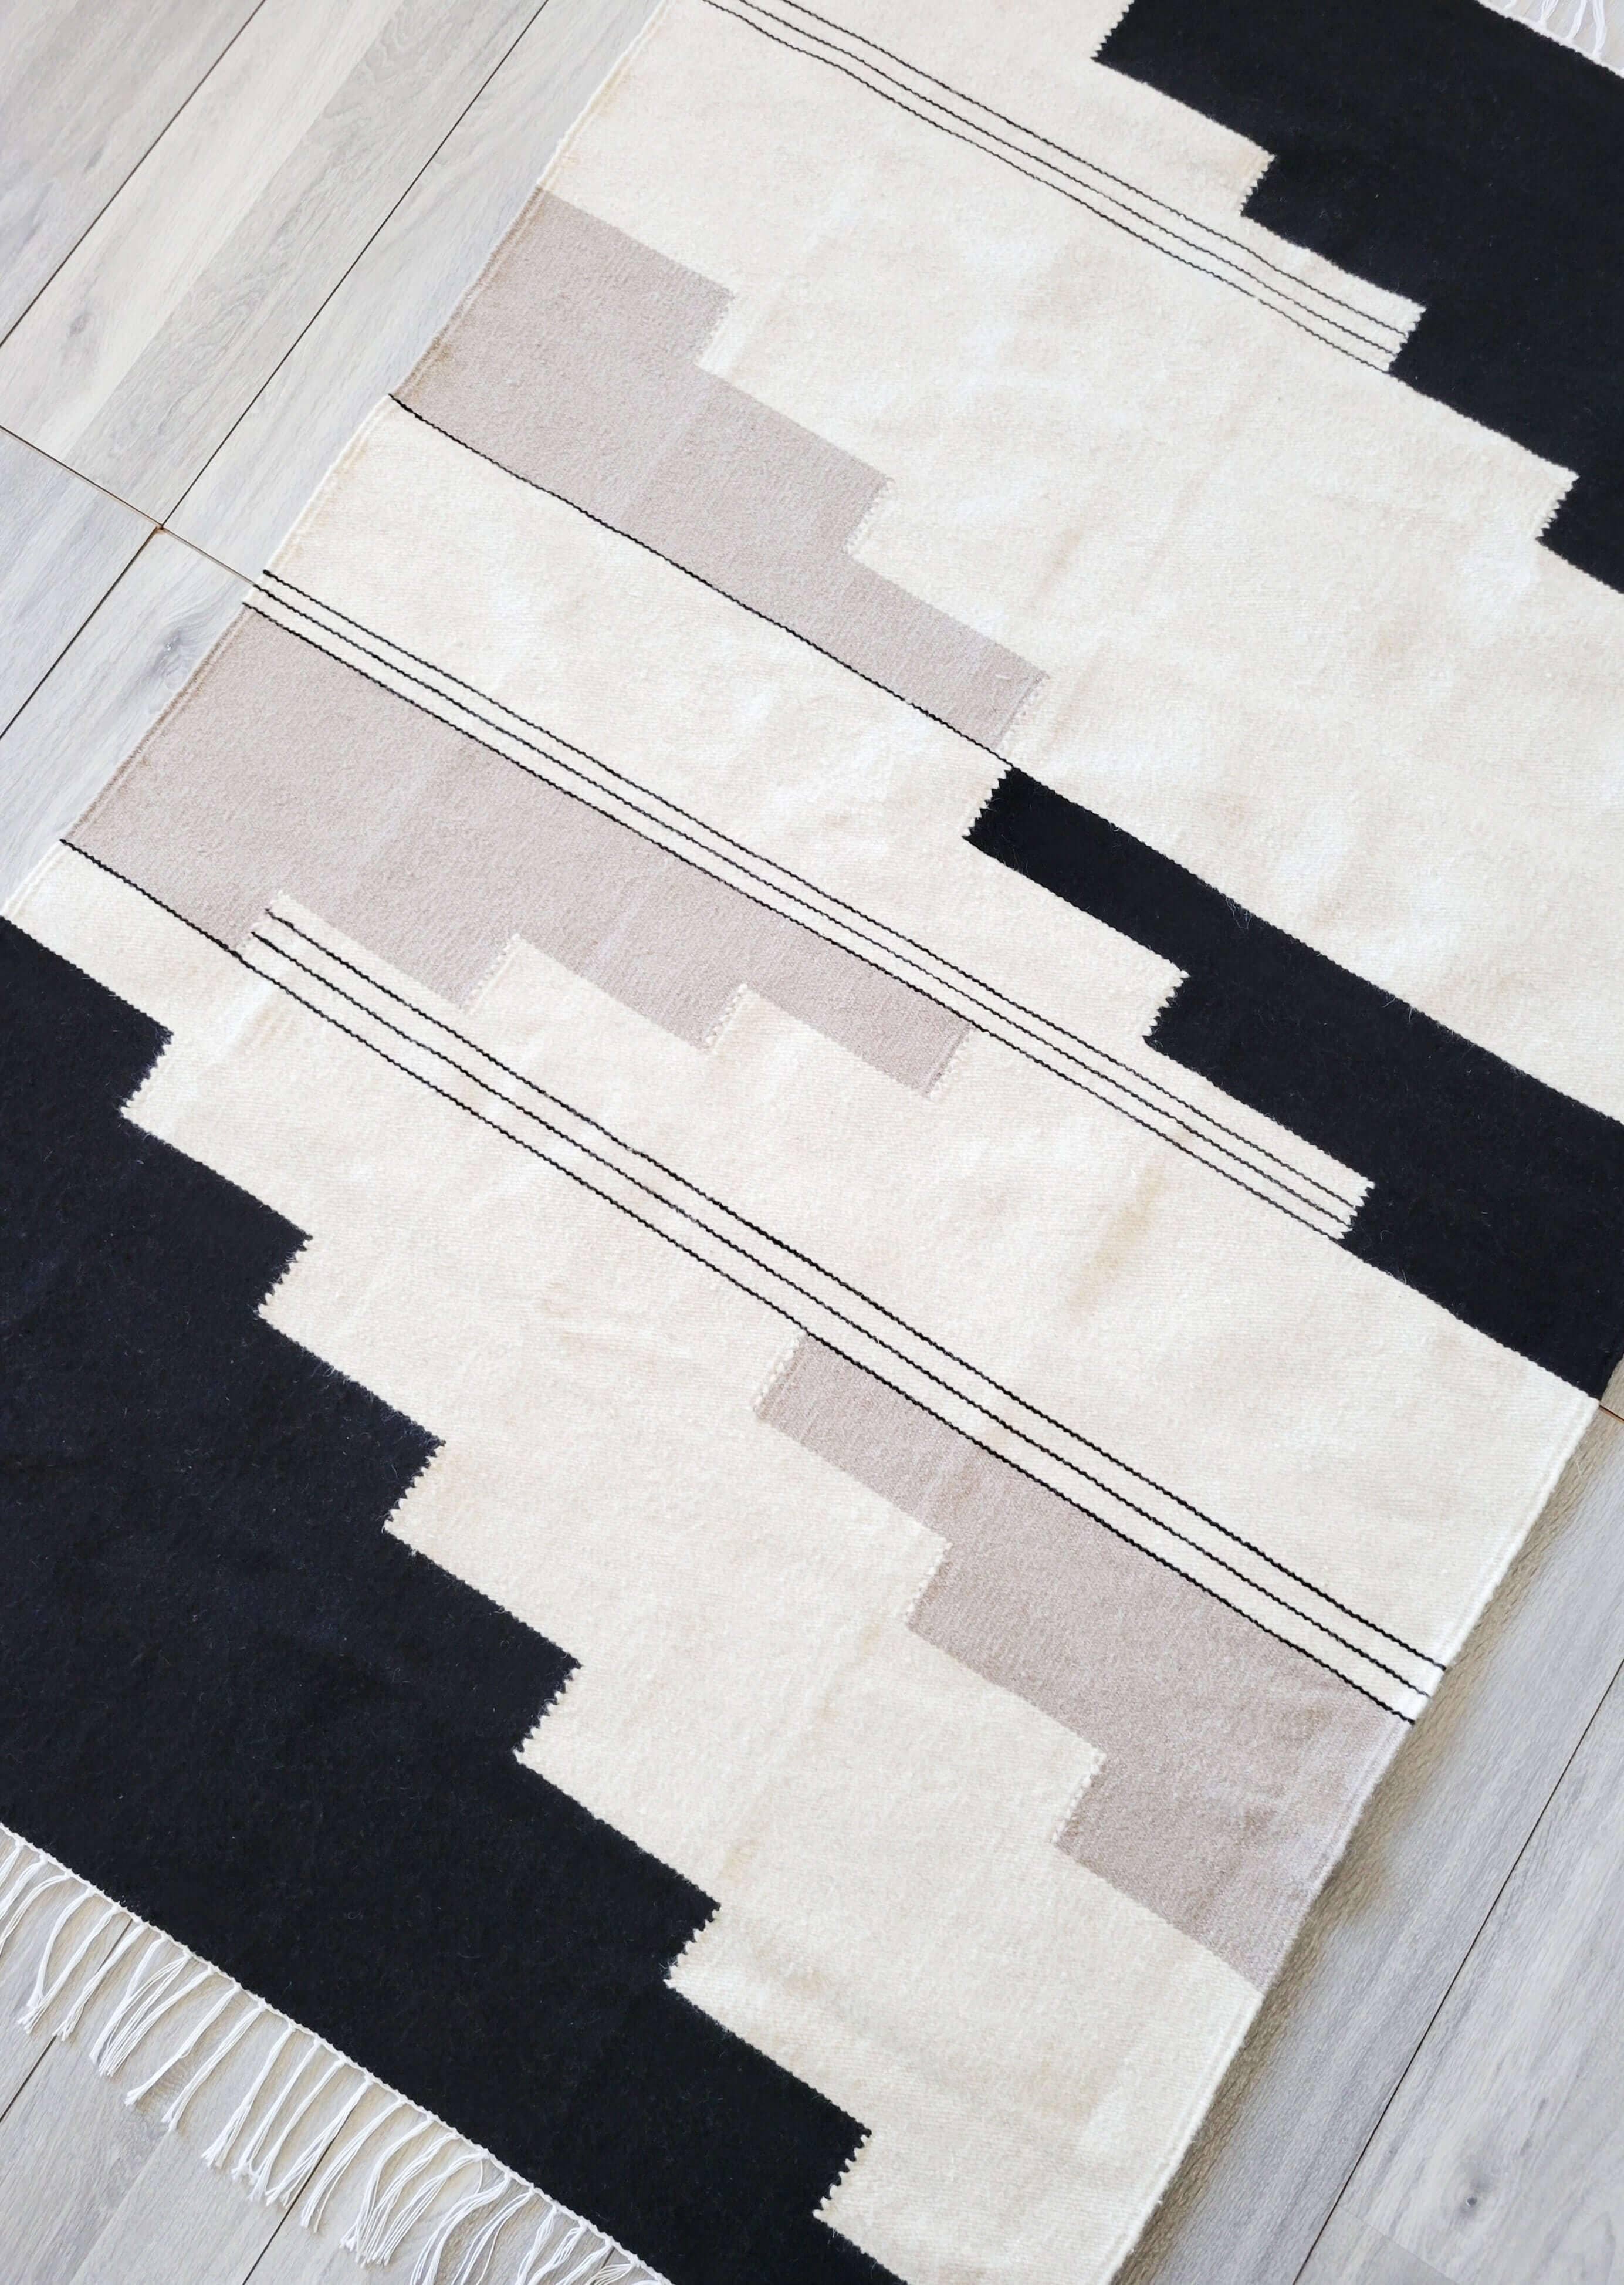 Dieser Teppich aus natürlicher Wolle ist in den Farben Schwarz, Grau und Creme gehalten und besteht aus 100 % Wolle. Er ist strapazierfähig, weich und perfekt für jeden Raum im Haus. Neutrale Farben ermöglichen eine einfache Anpassung an jede